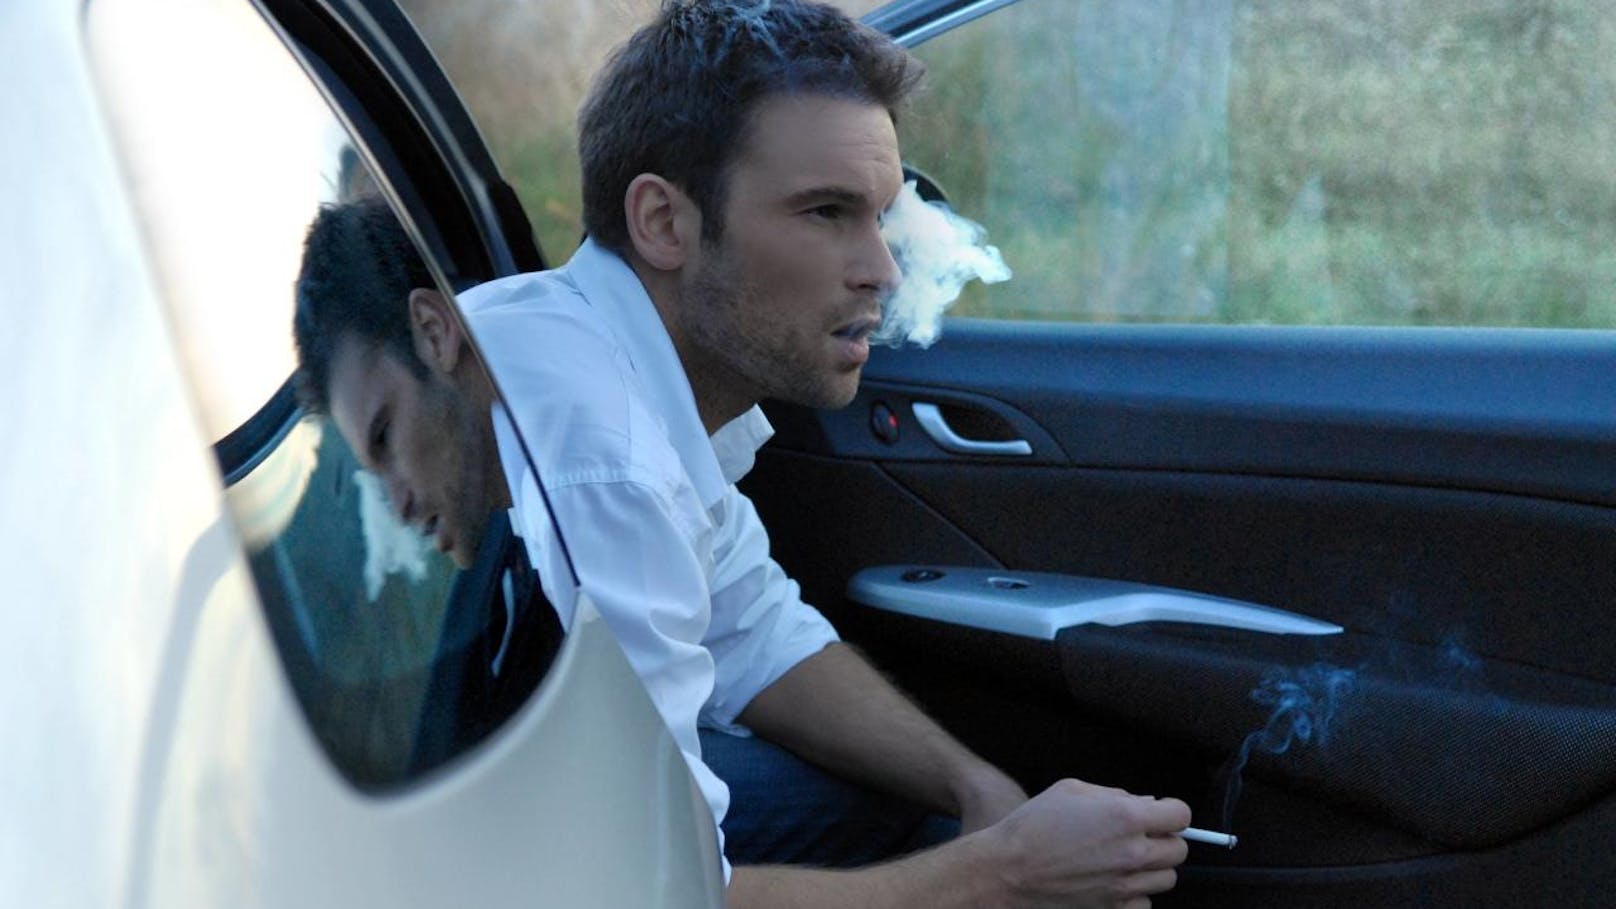 <b>Rauchverbot im Auto - So sind die Regelungen und Strafen in Europa >>></b>